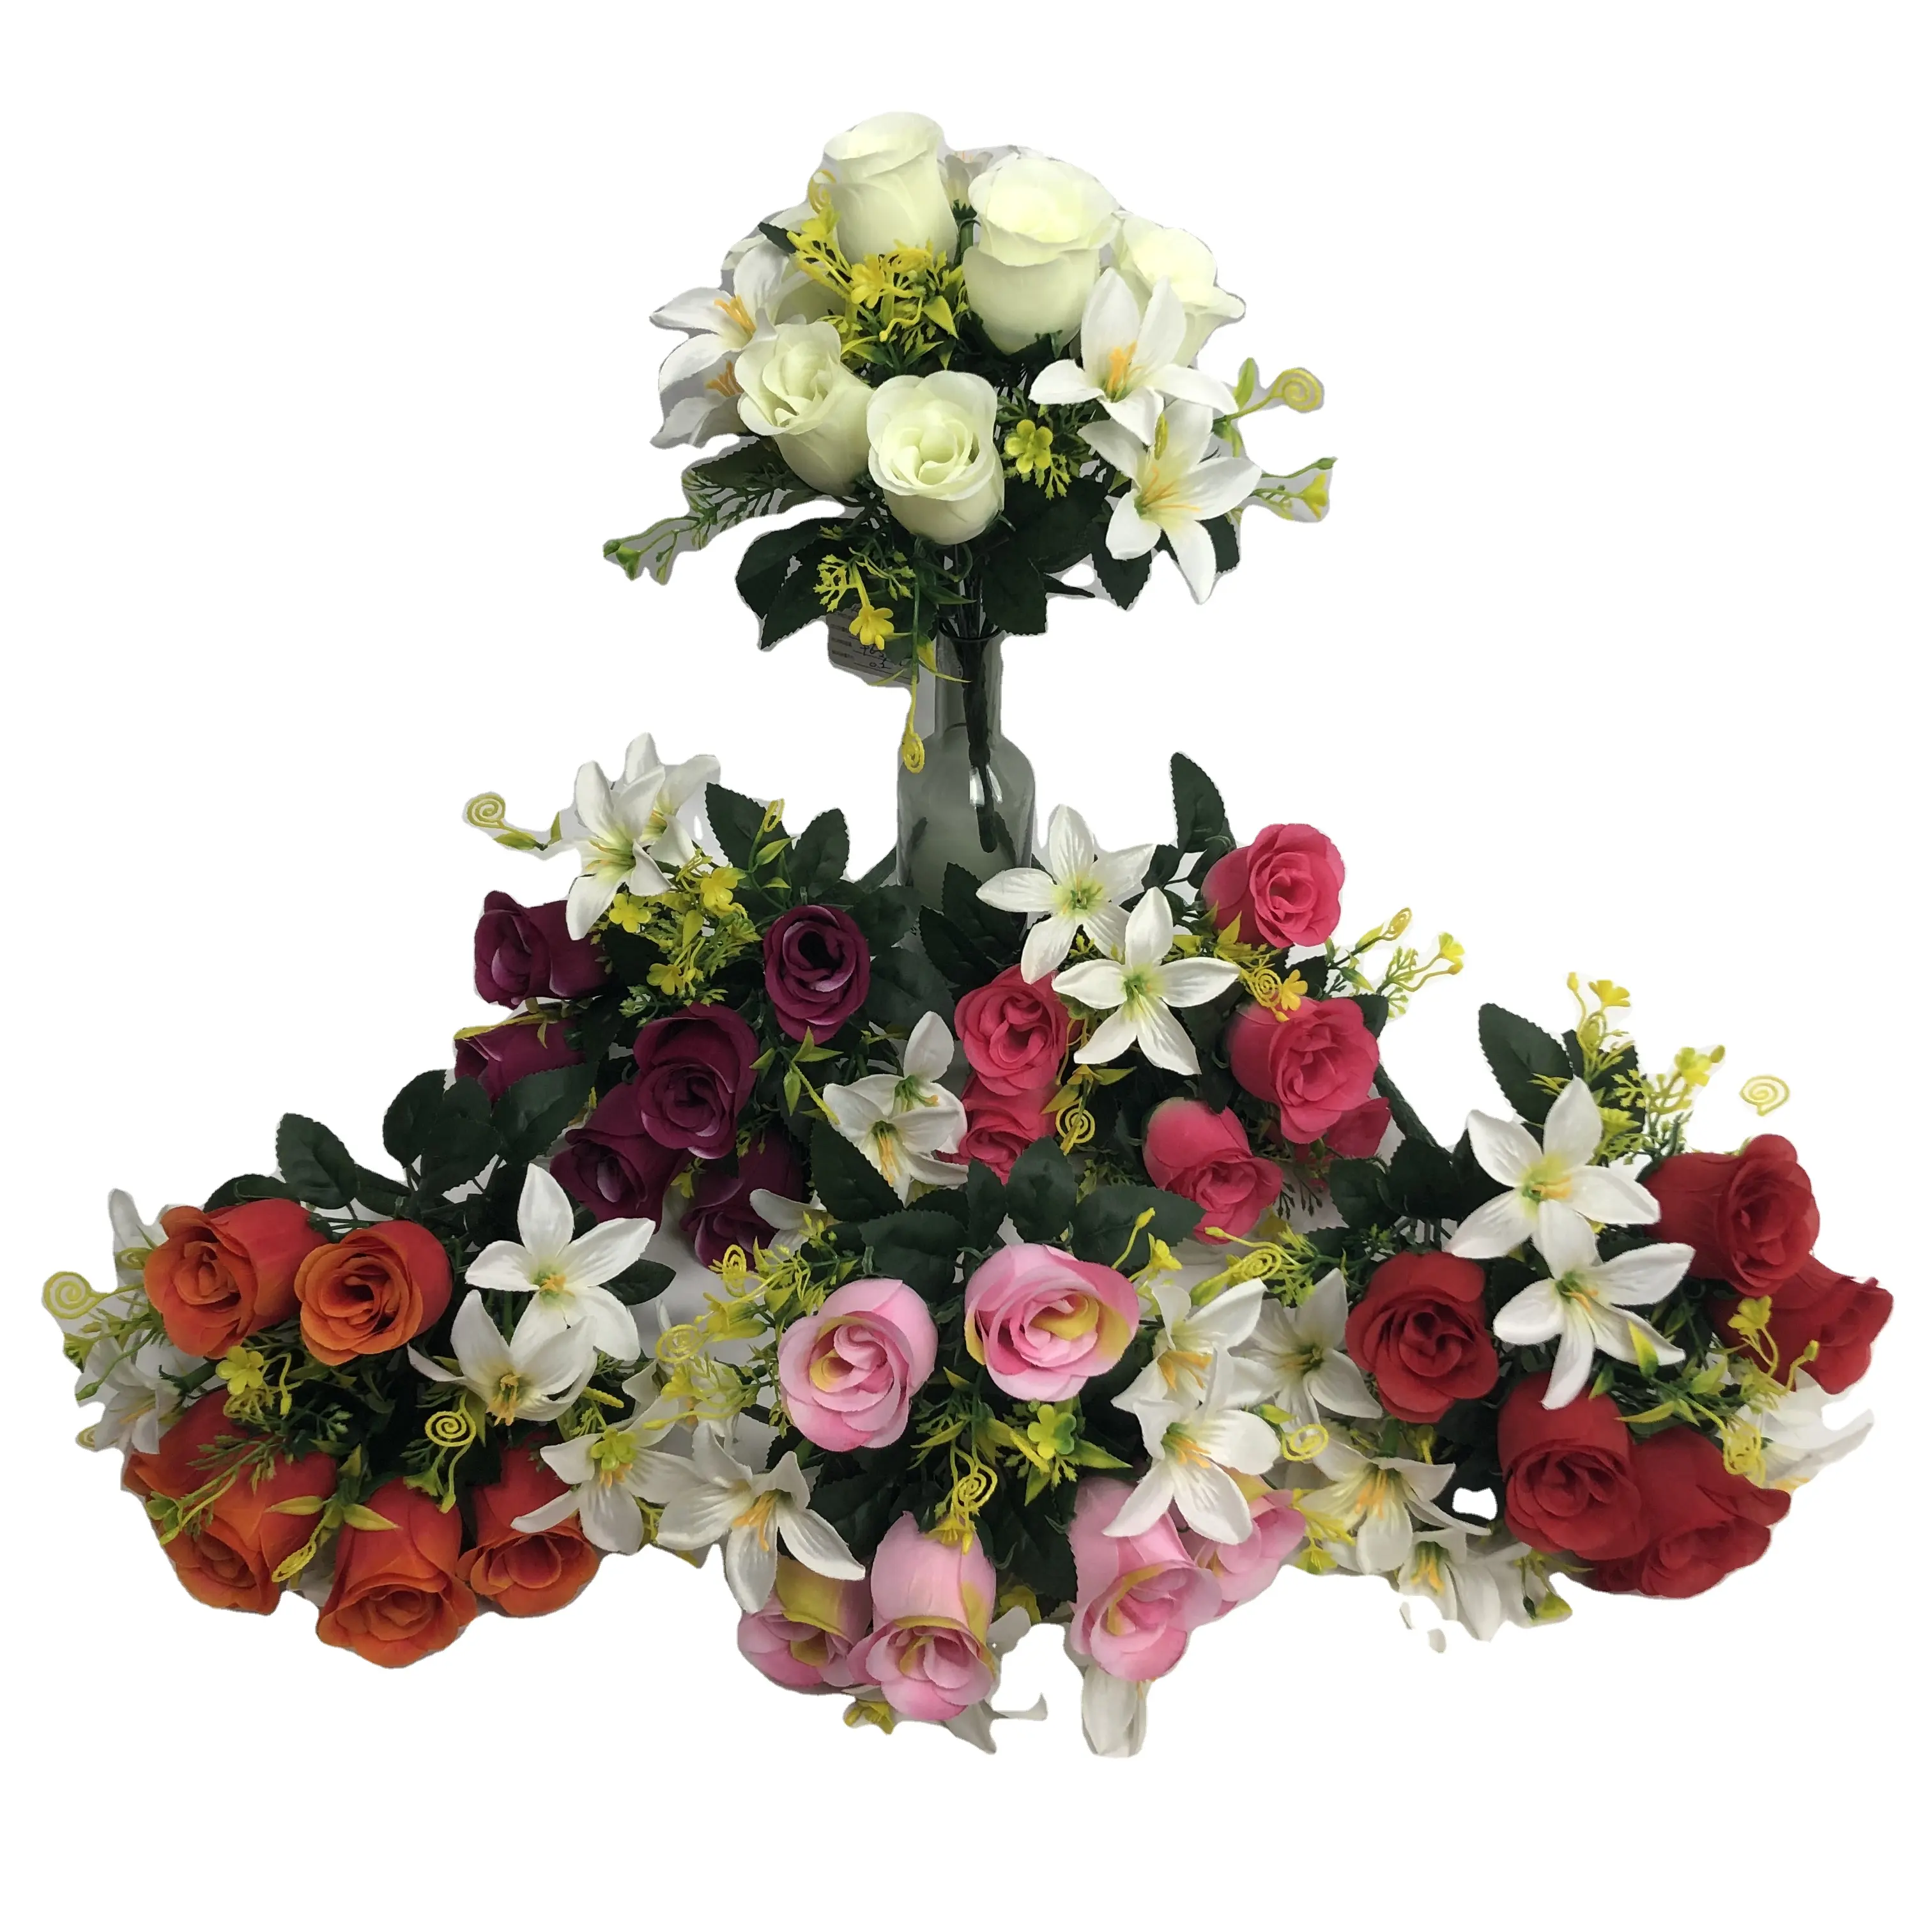 โรงงานโดยตรงขายผ้าไหมประดิษฐ์ Rose ผสม Lily Bouquet Funeral Flowers สำหรับ Memorial Day